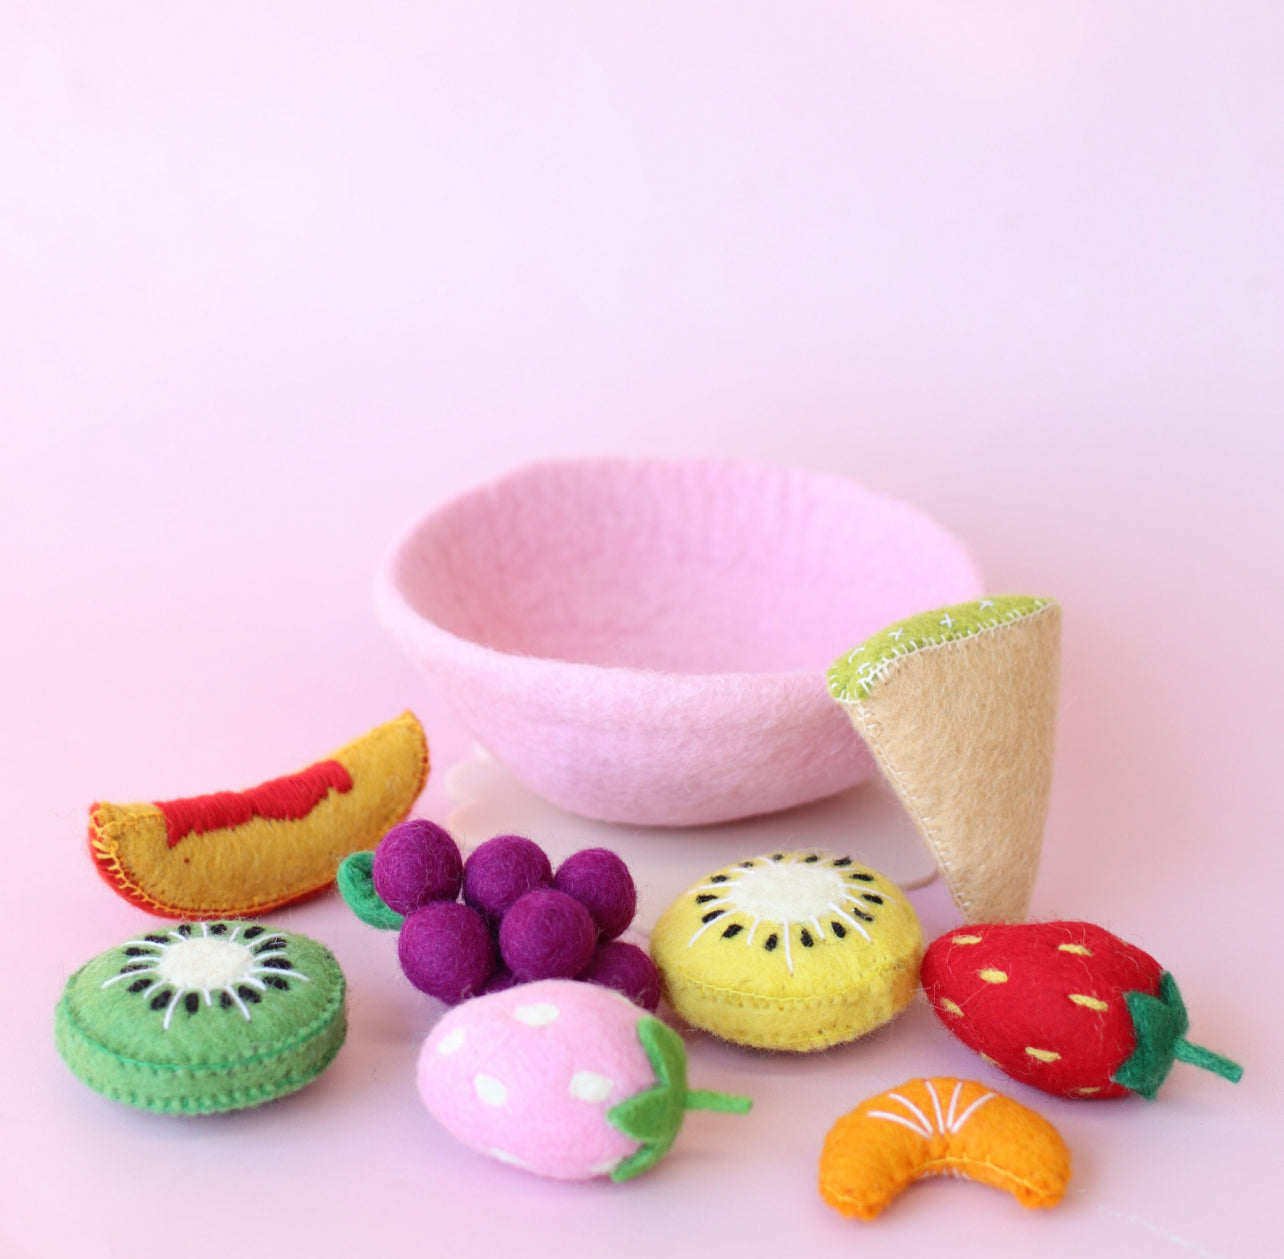 NEW! Tutti Fruity Fruit salad sets - choose your bowl colour - 9 pce set